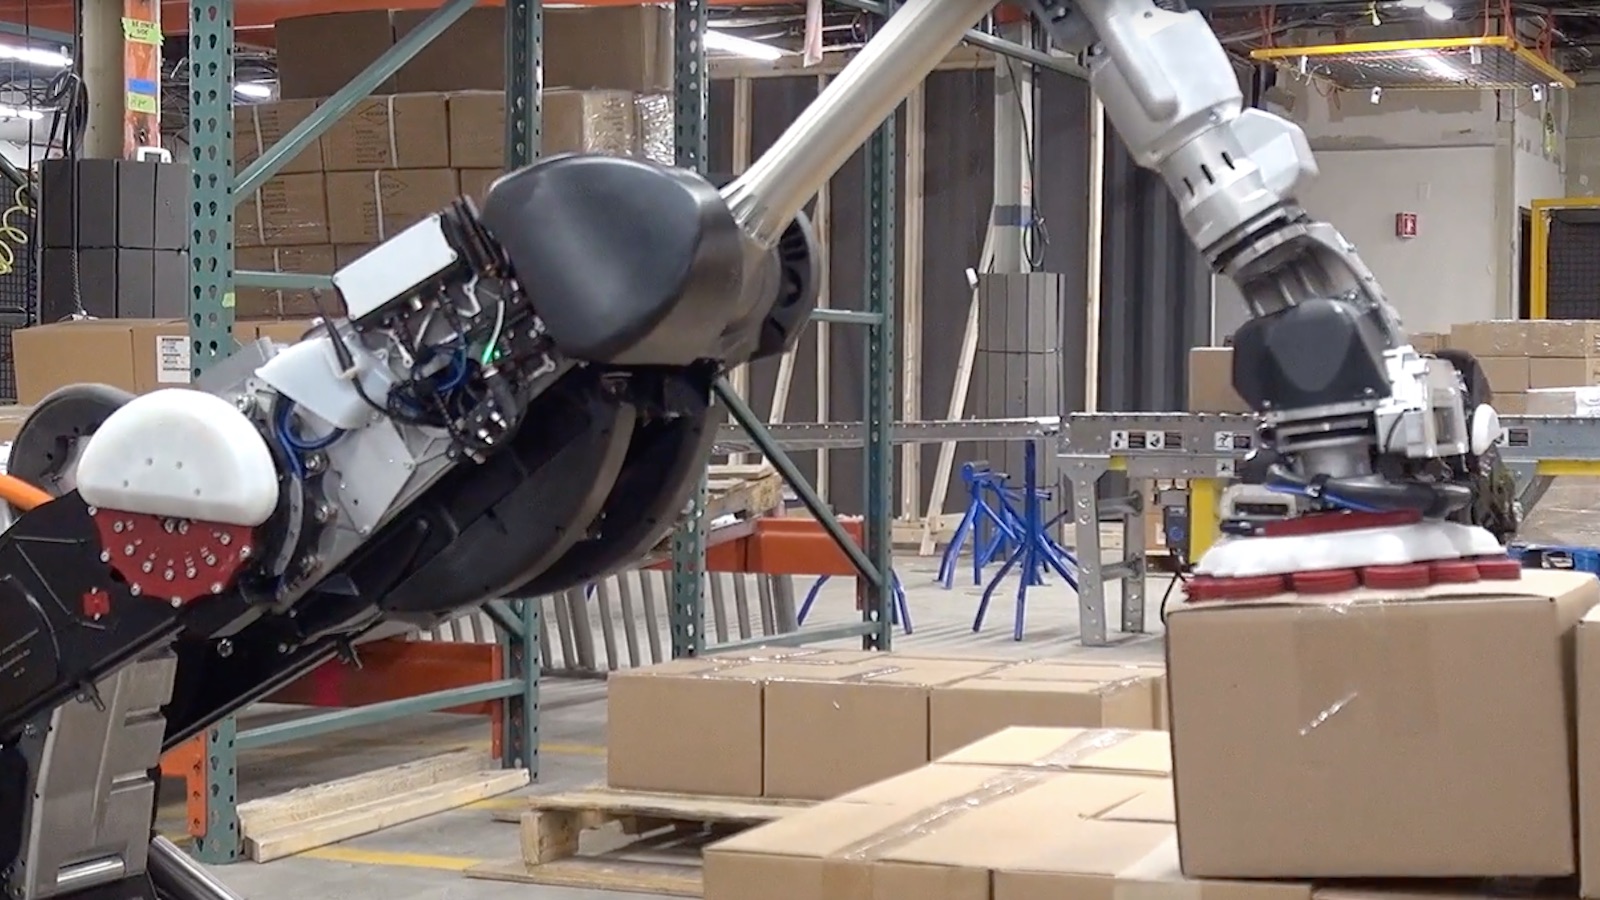 Handle ressemble au robot humanoïde Atlas de Boston Dynamics. © Boston Dynamics